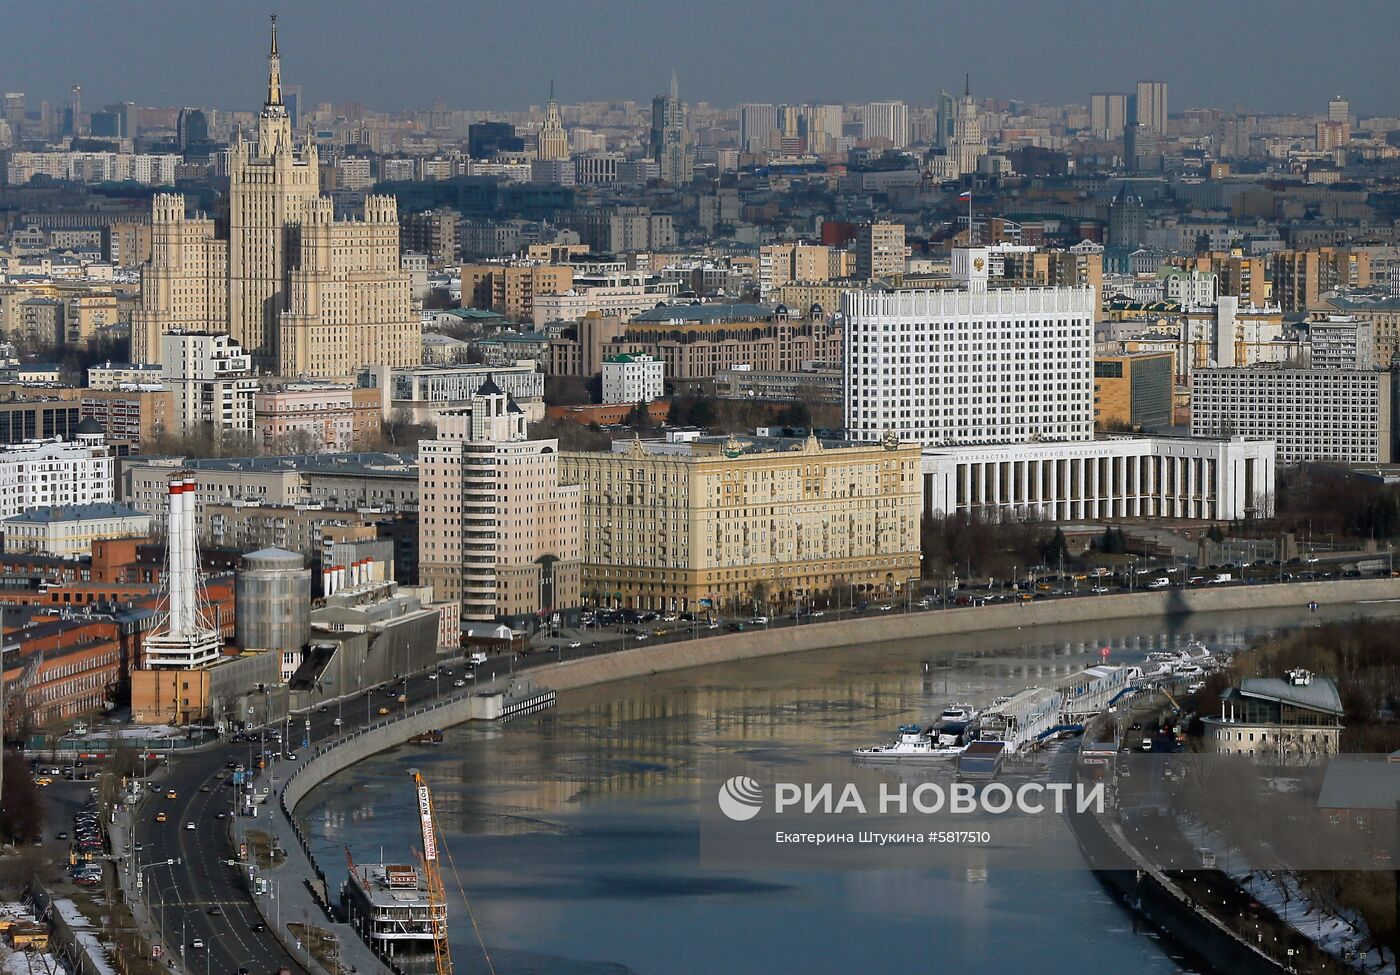 Вид на здание Дома правительства РФ на Краснопресненской набережной Москвы-реки